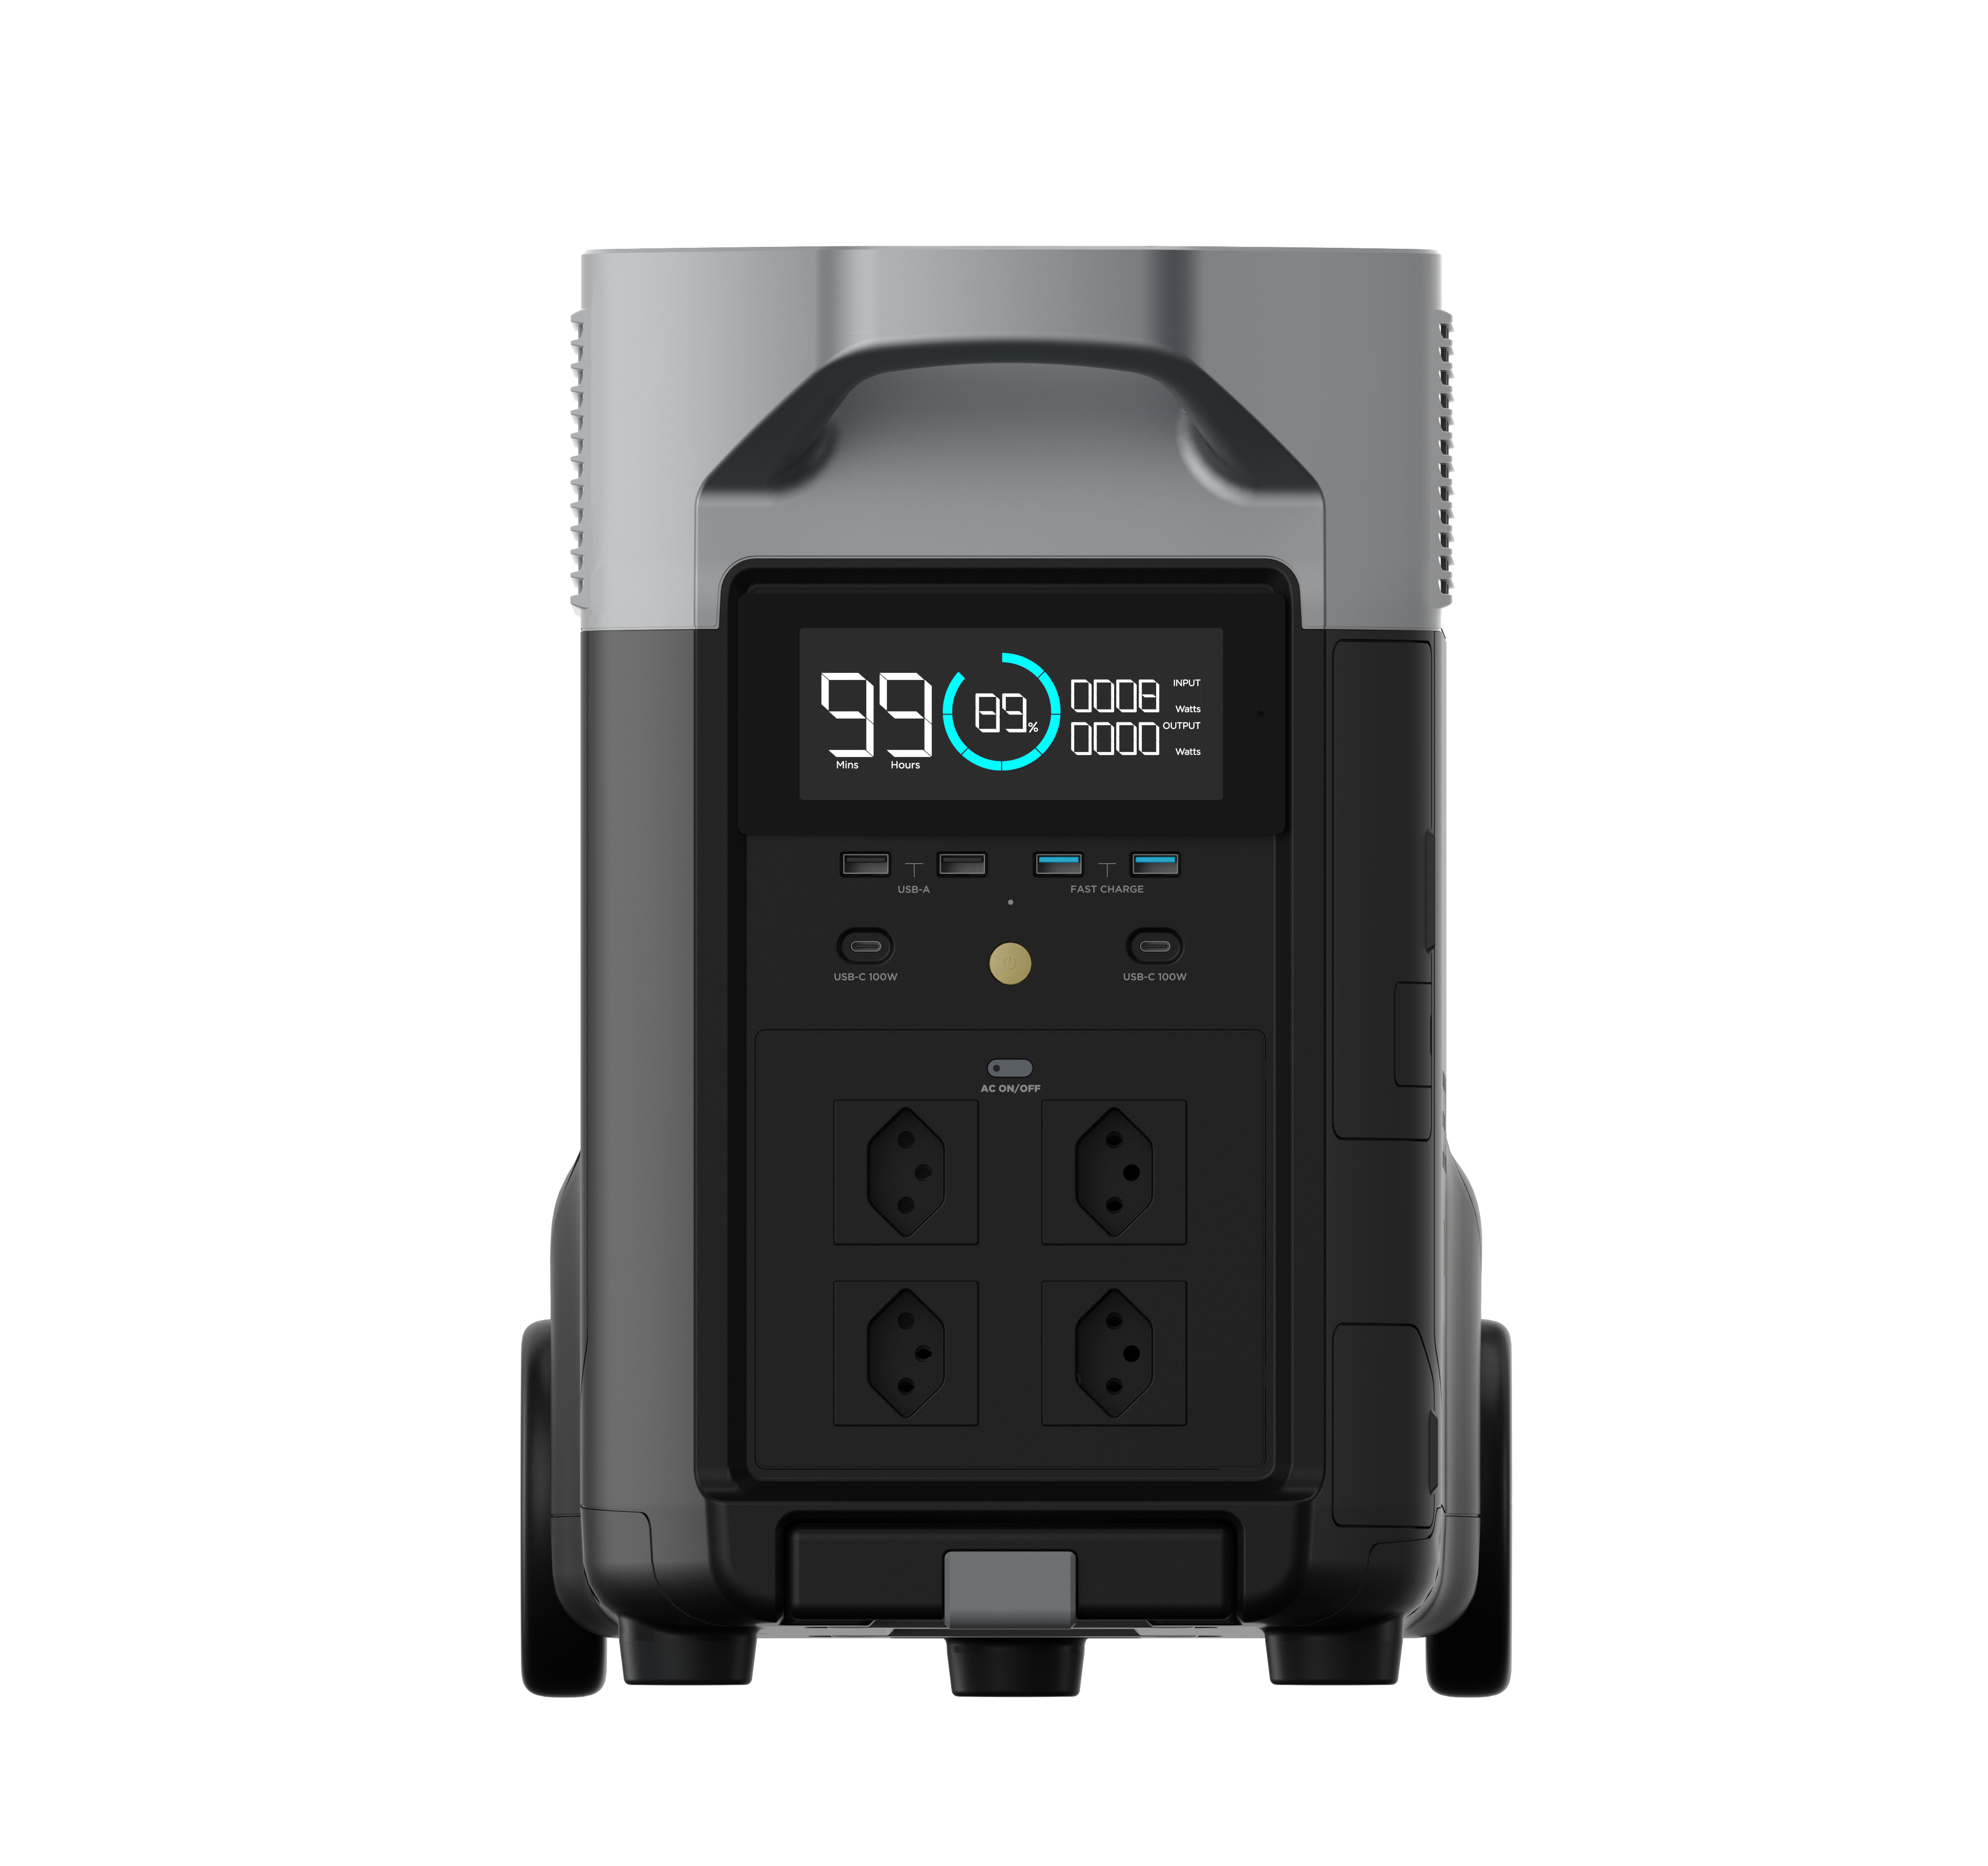 Chargeur allume cigare XT60 pour stations de charge - EcoFlow - ABOT